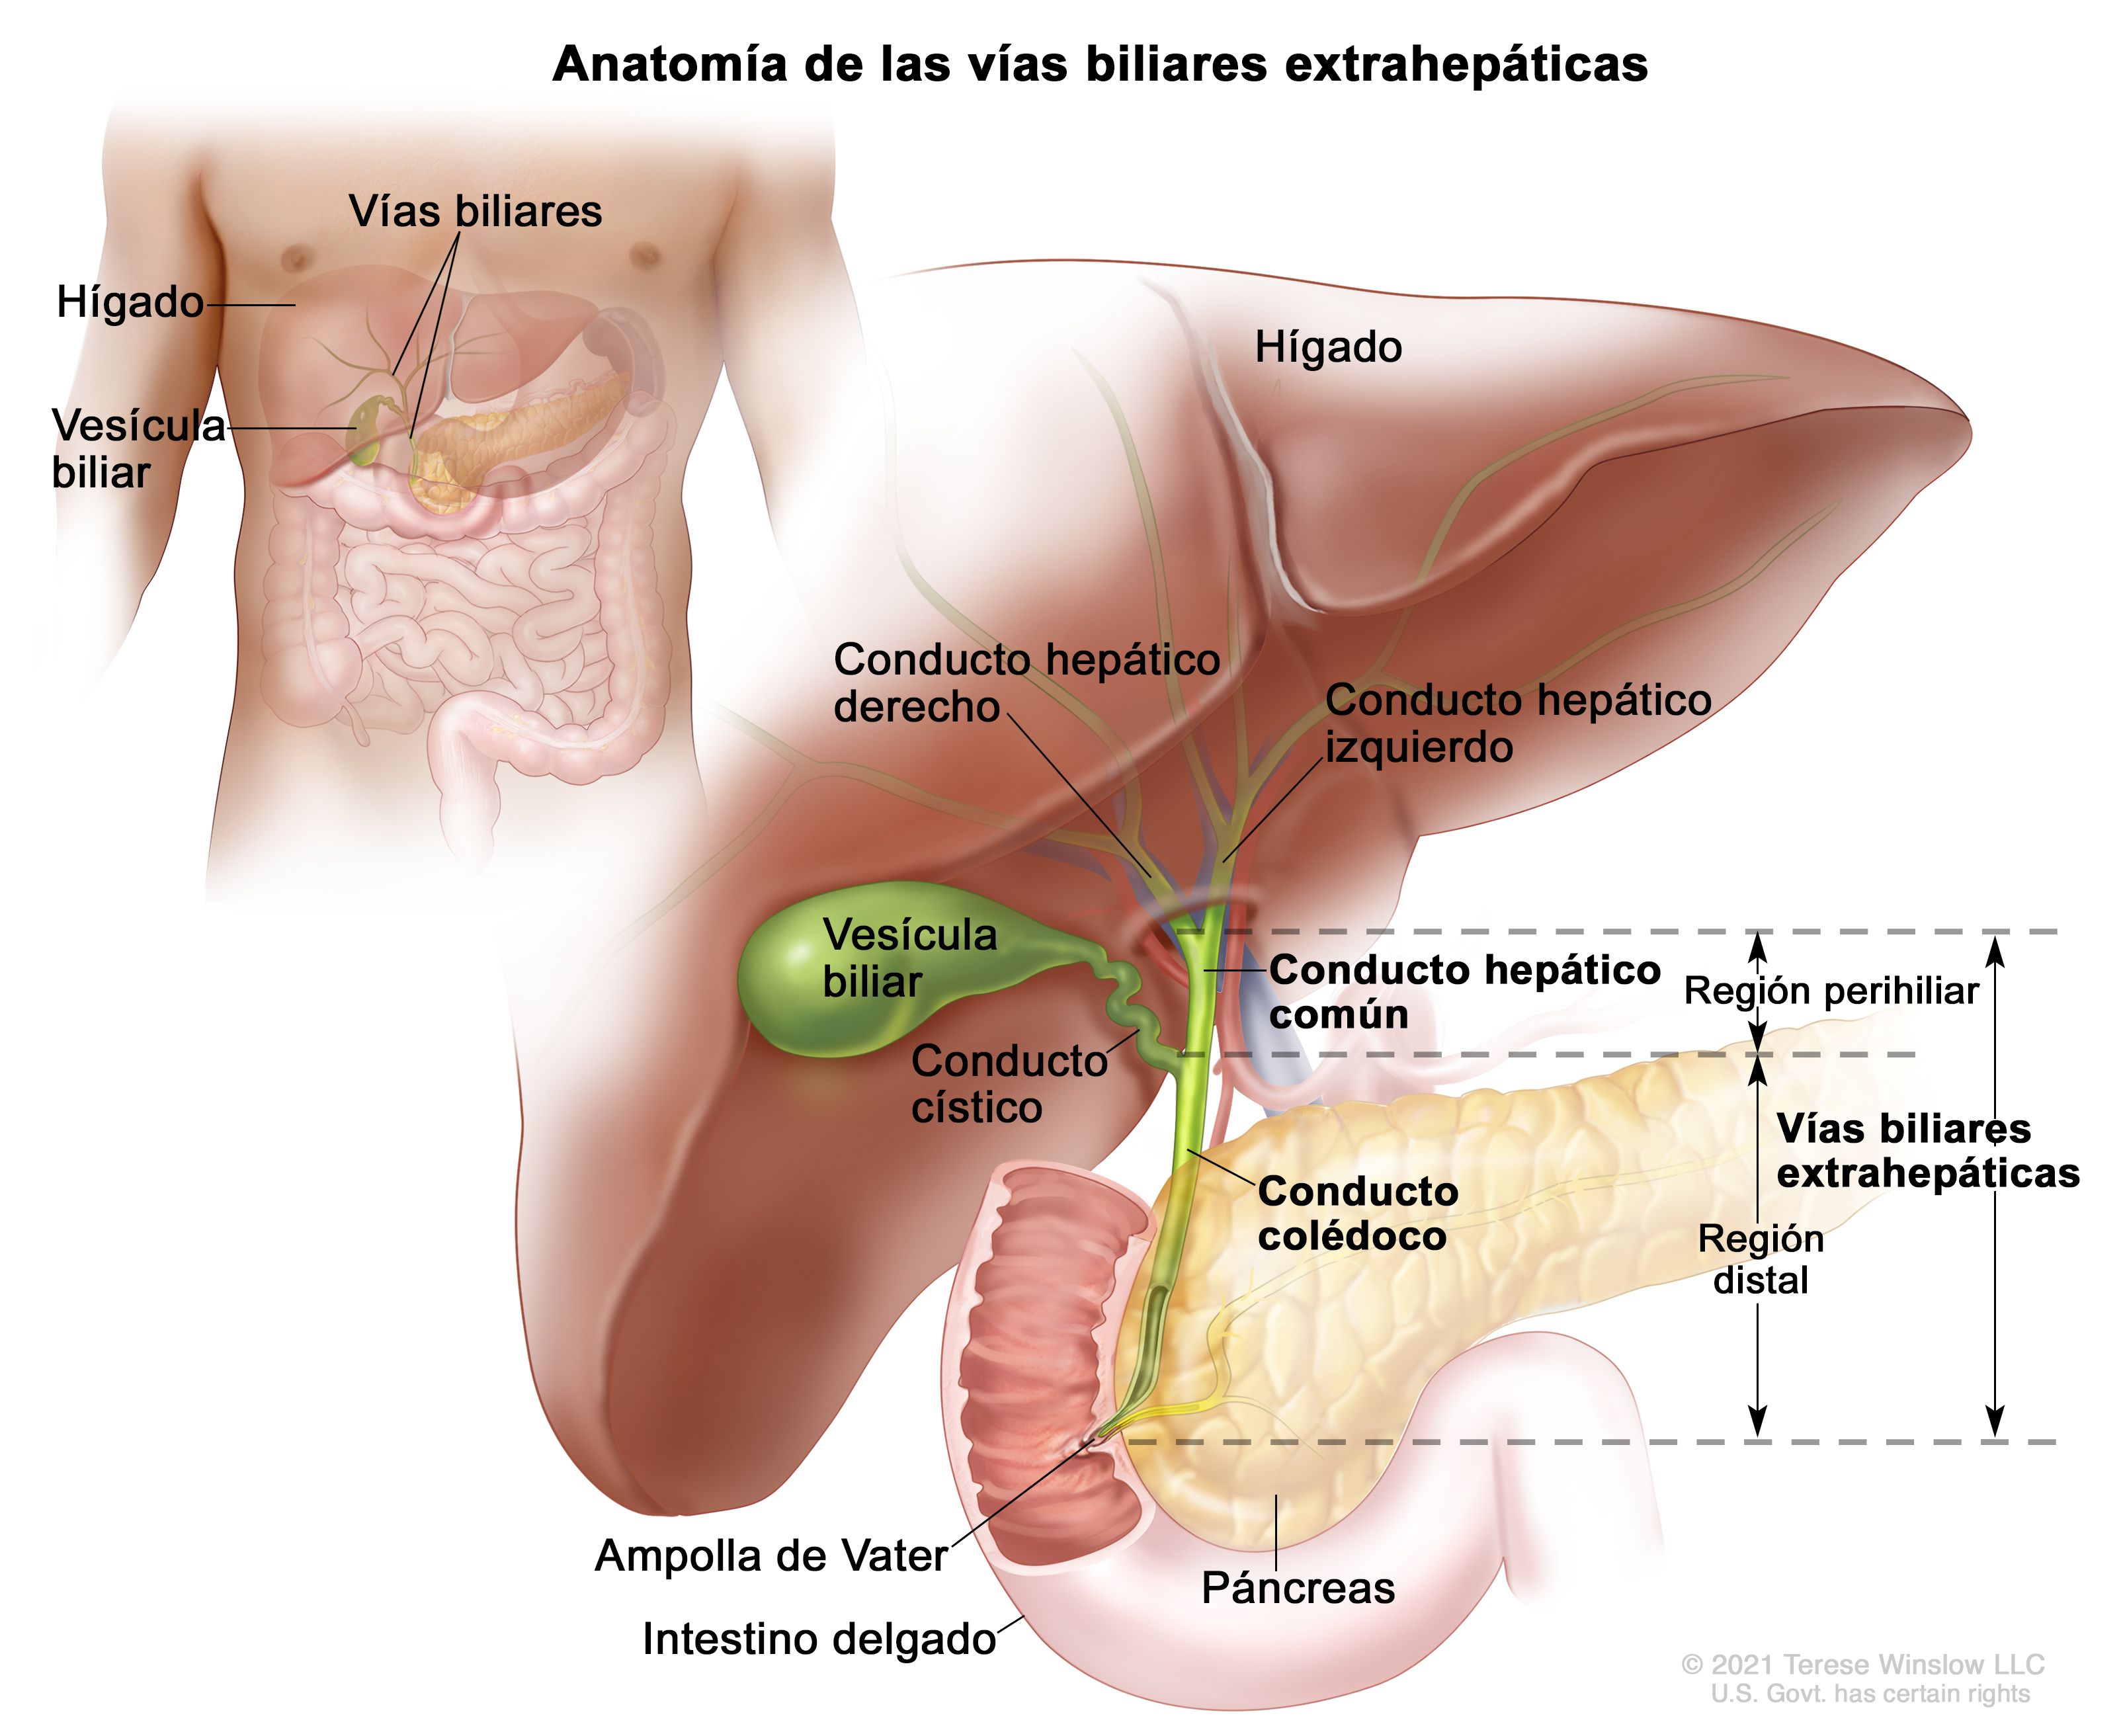 hpv virus keelpijn papiloma de uvula